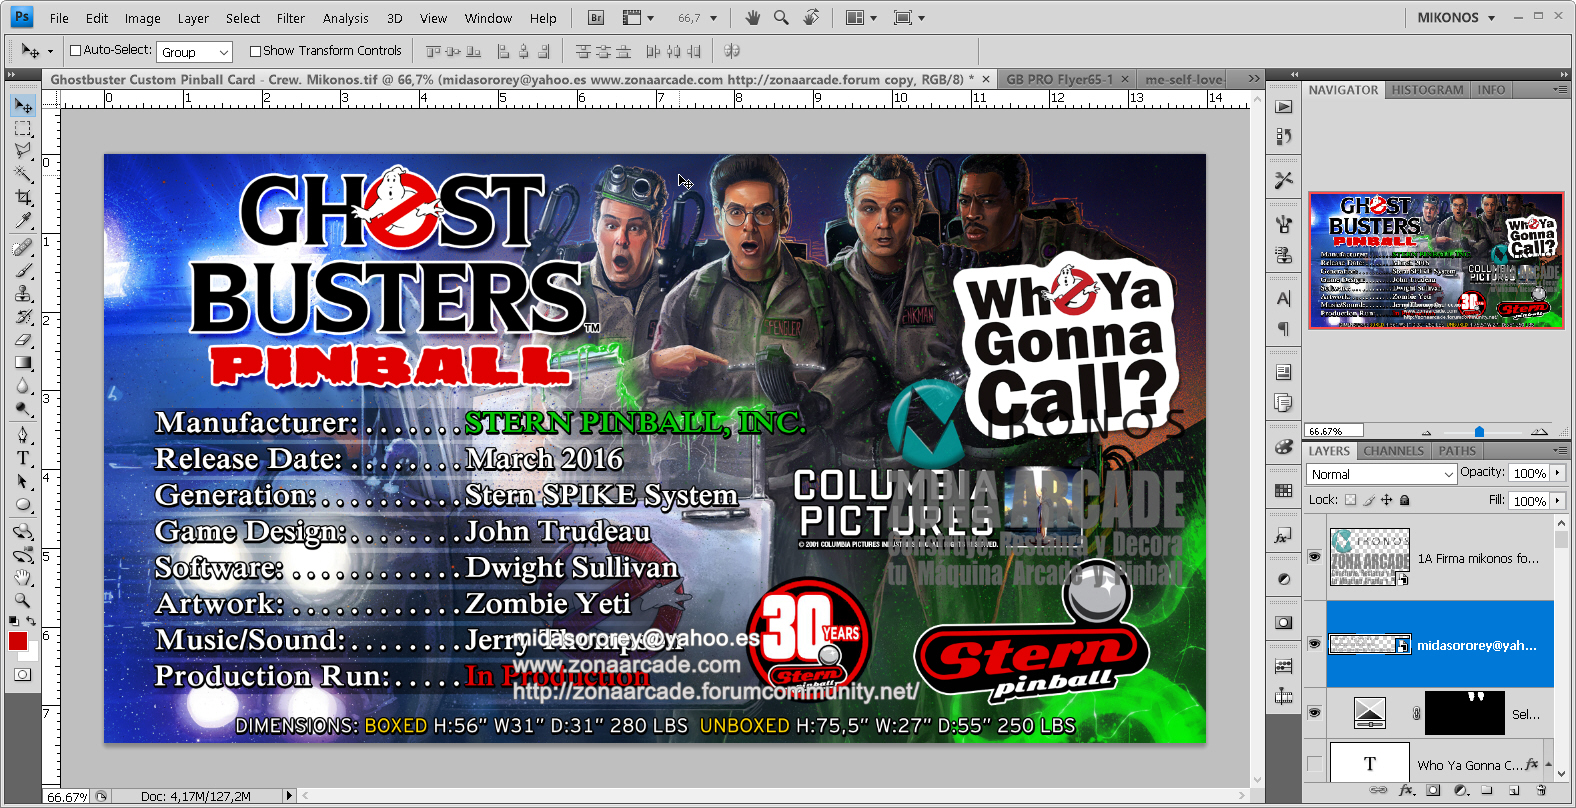 Ghostbusters%20Custom%20Pinball%20Card%20-%20Crew.%20Mikonos1.jpg